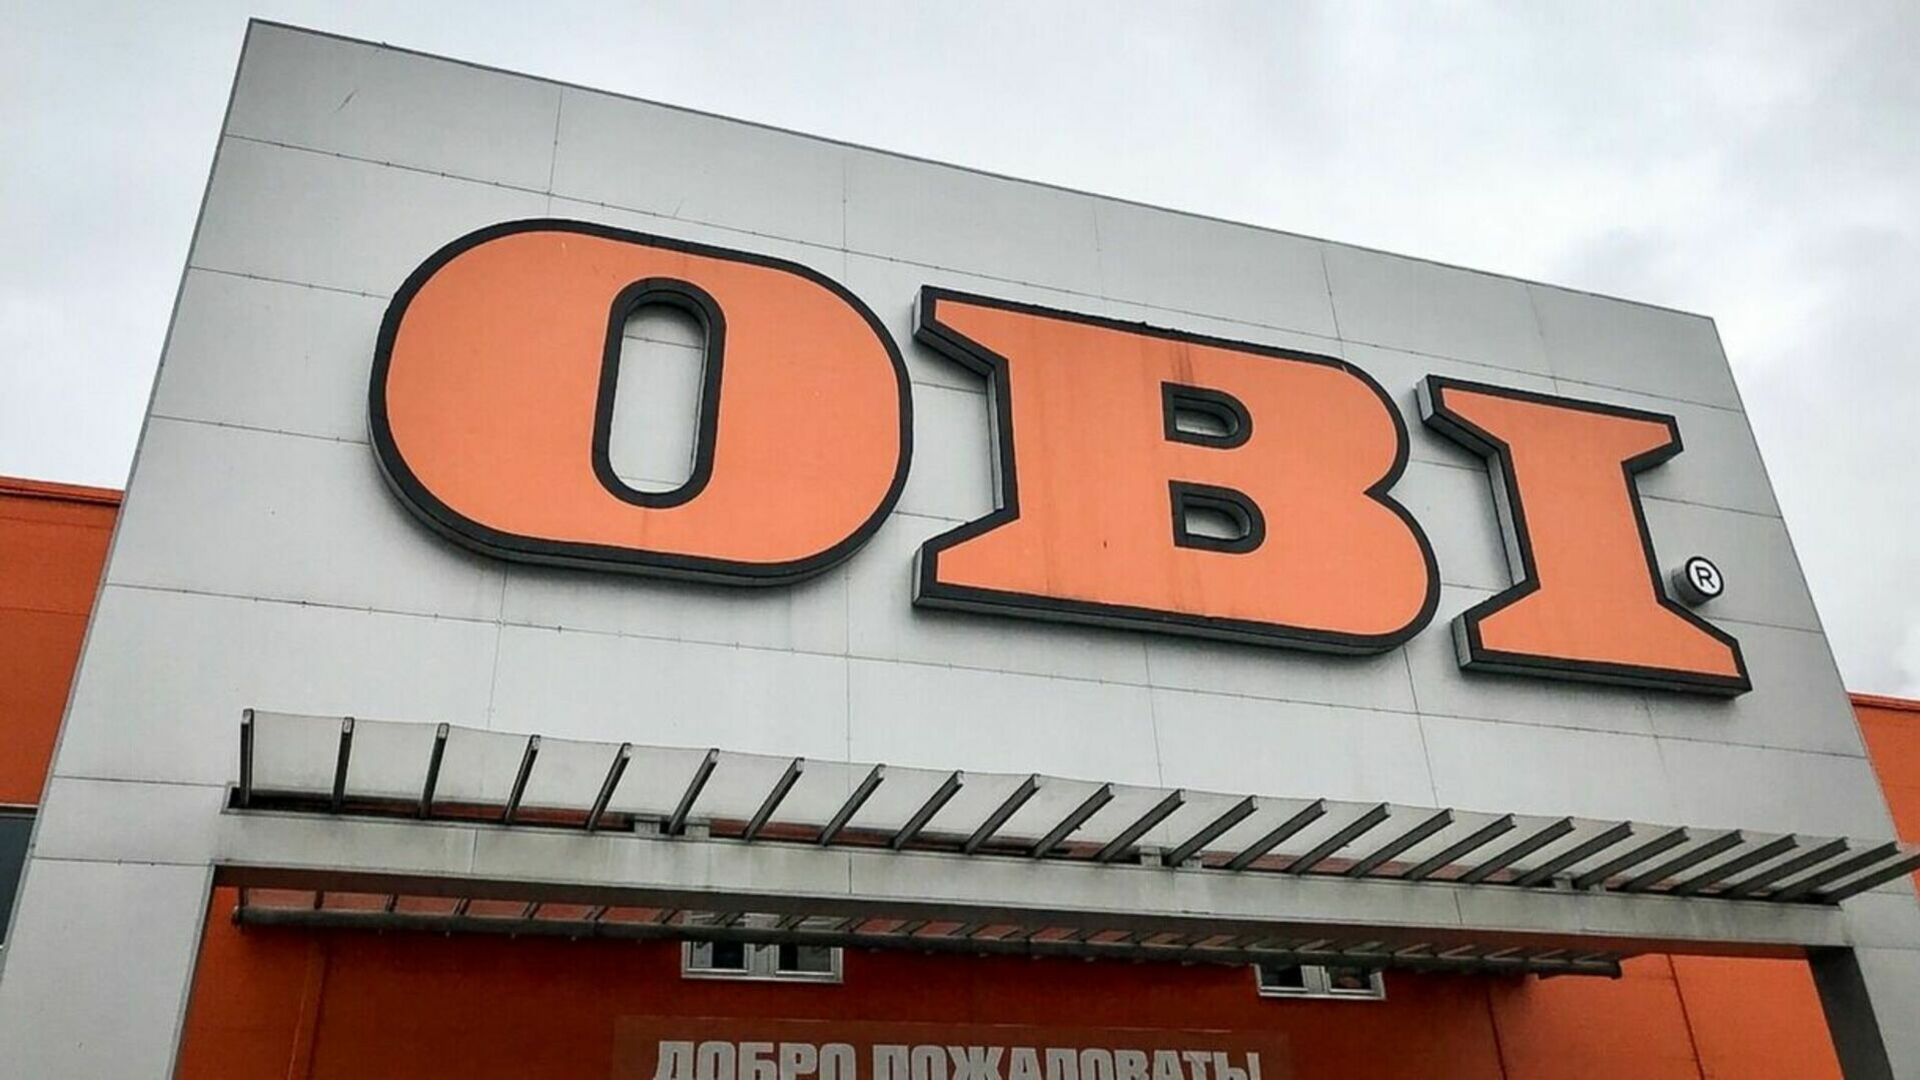 Второй день сургутяне атакуют магазин OBI из-за новости о закрытии